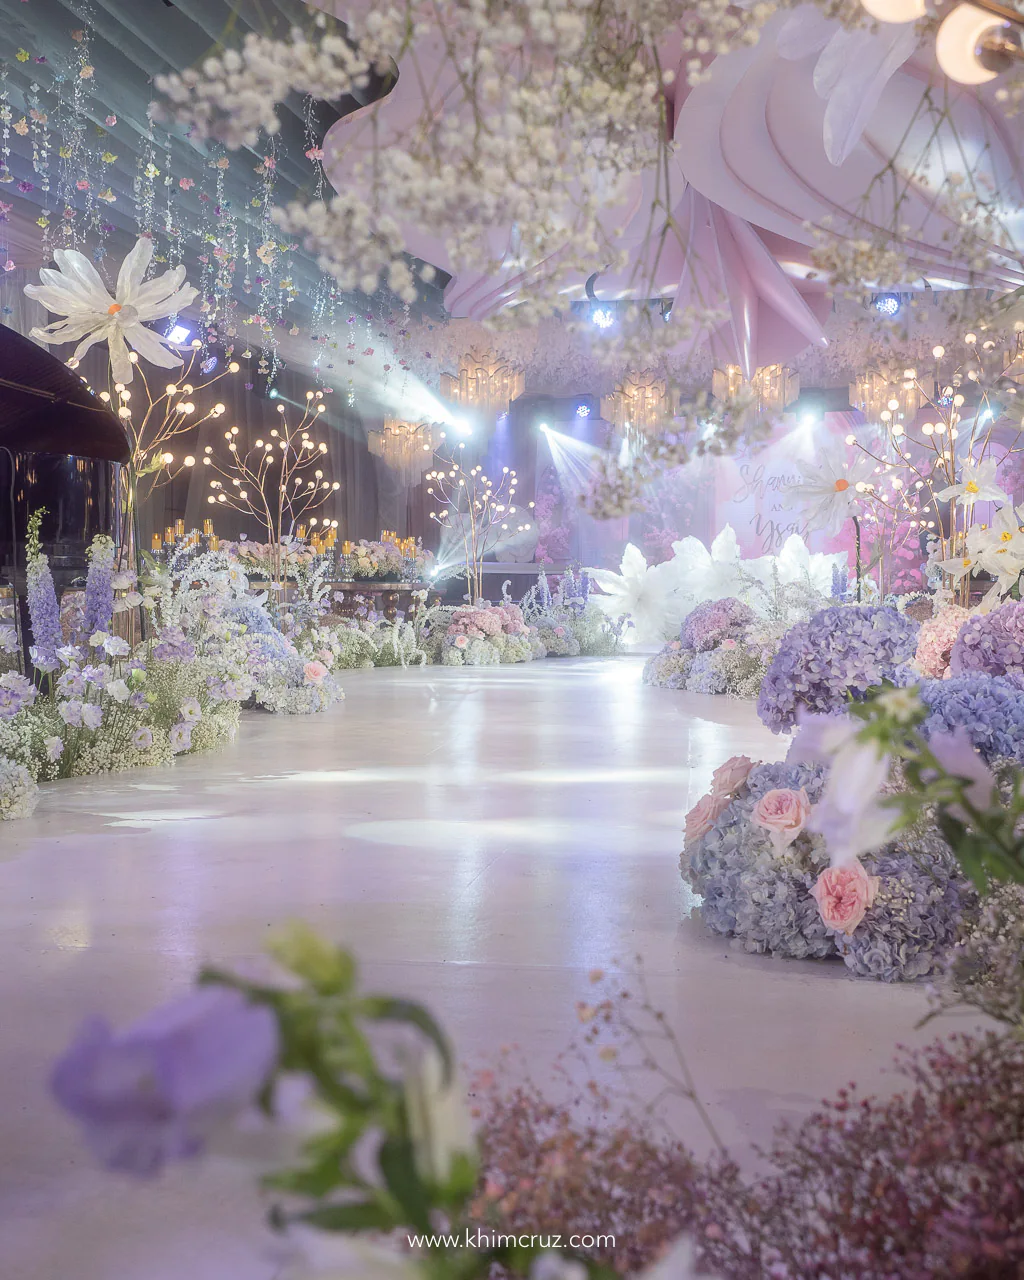 dreamy floral garden wedding reception aisle path floral design by wedding stylist Khim Cruz